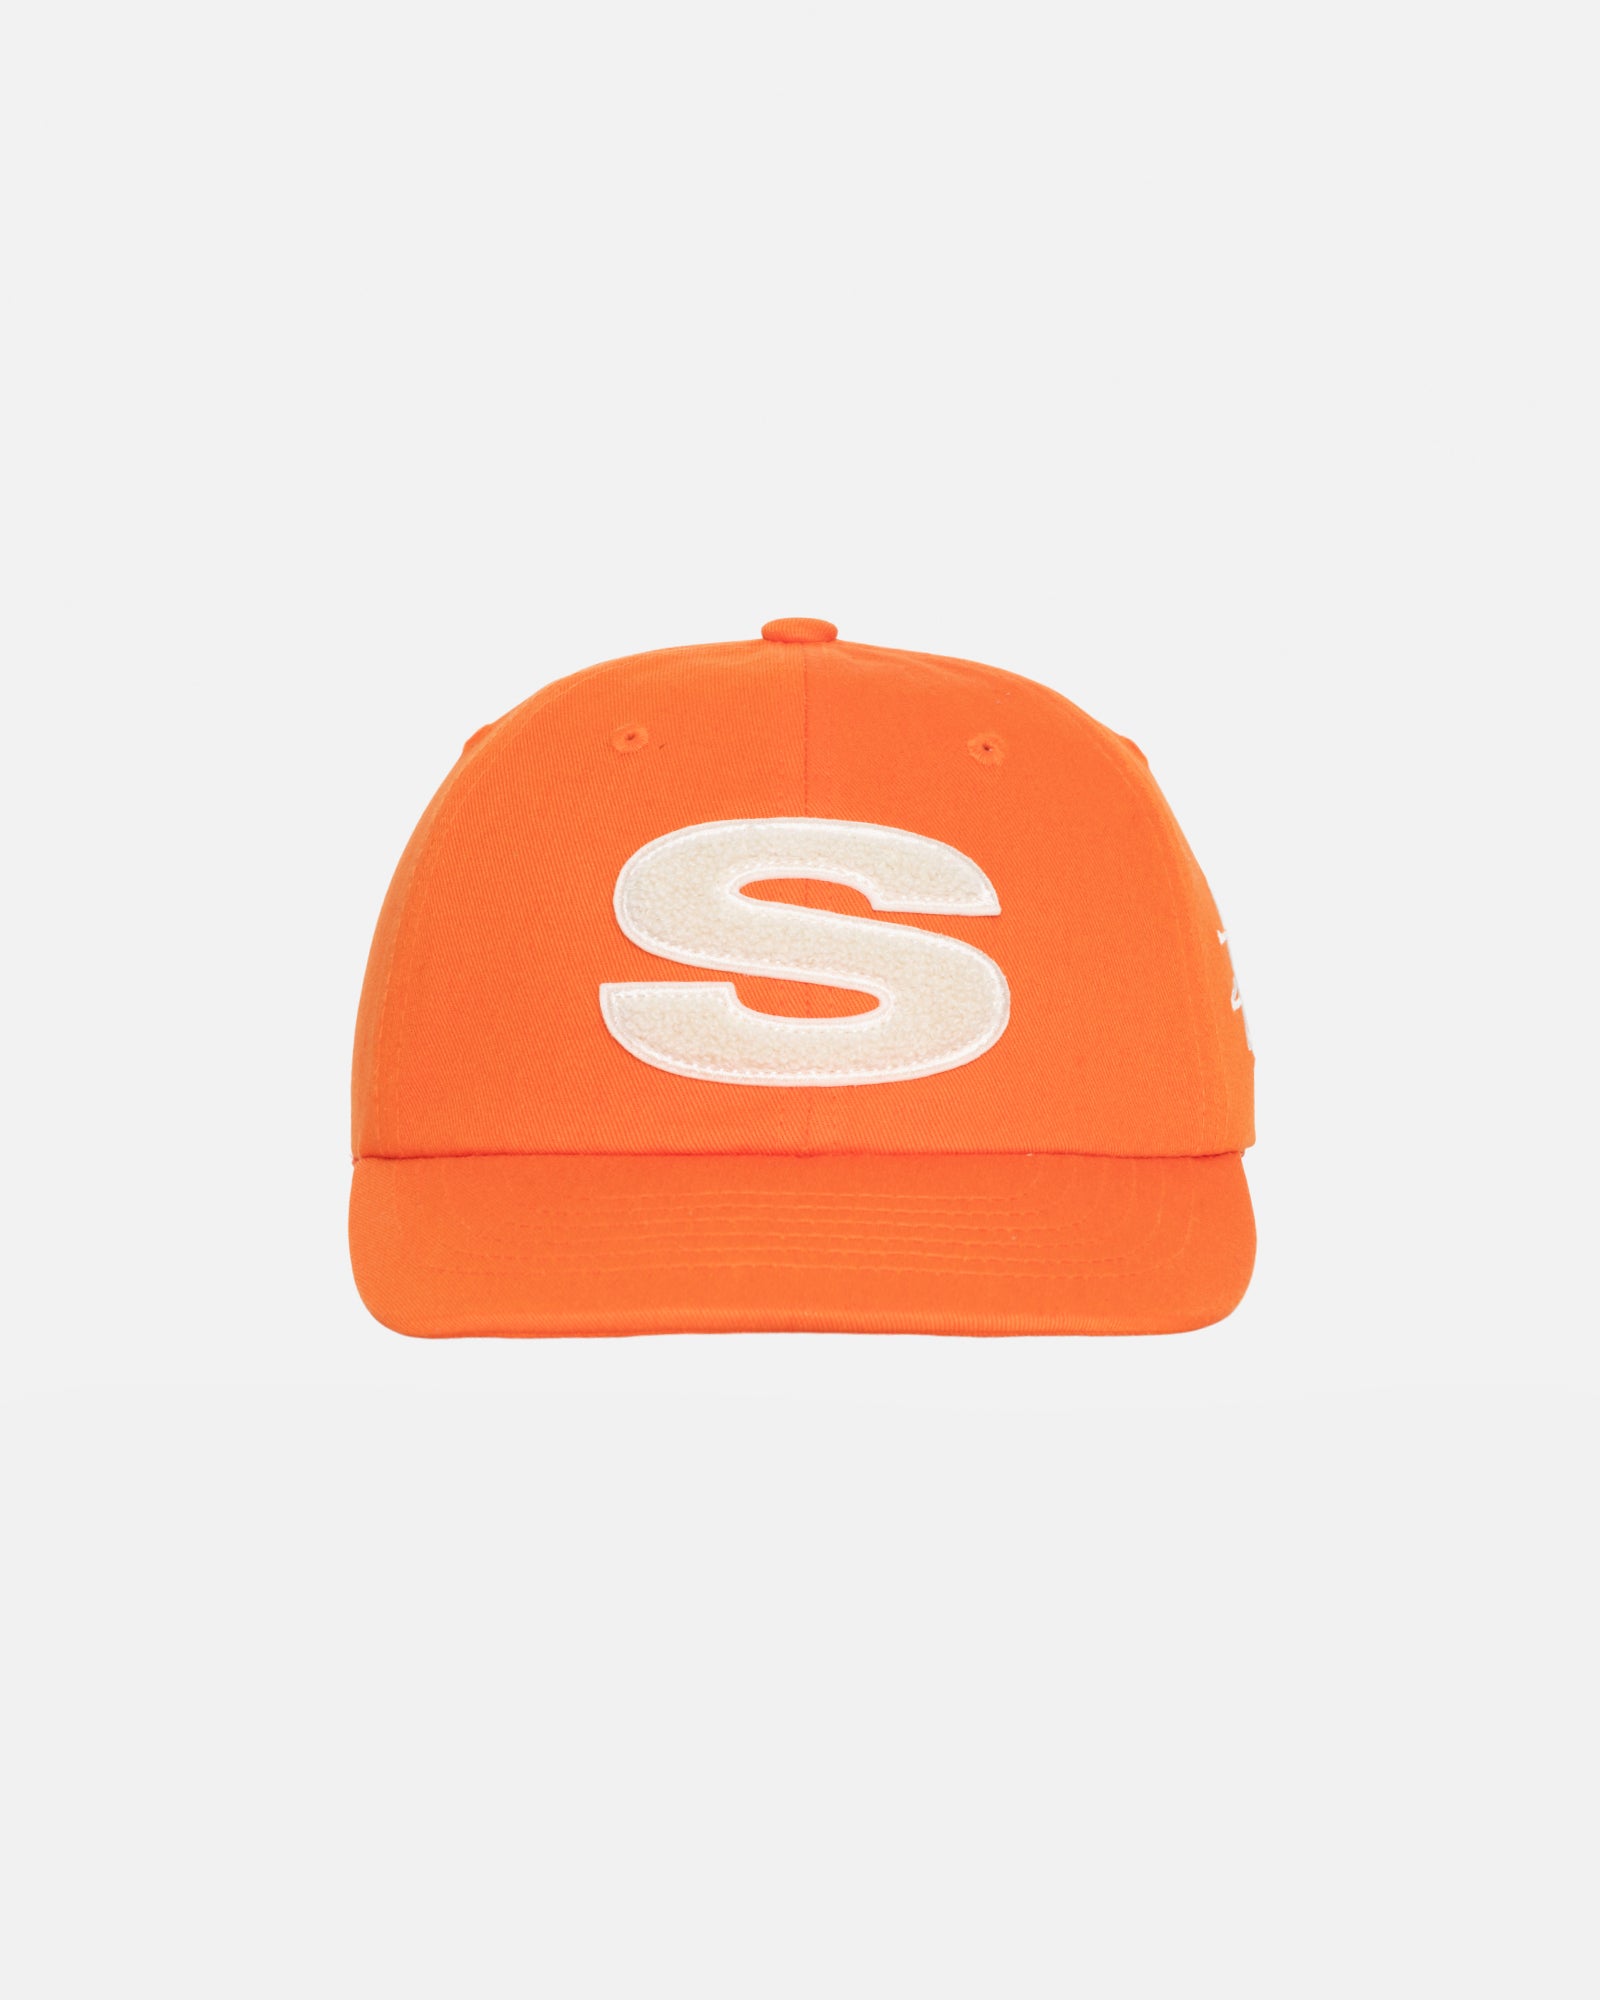 Stüssy Low Pro Chenille S Snapback Orange Headwear